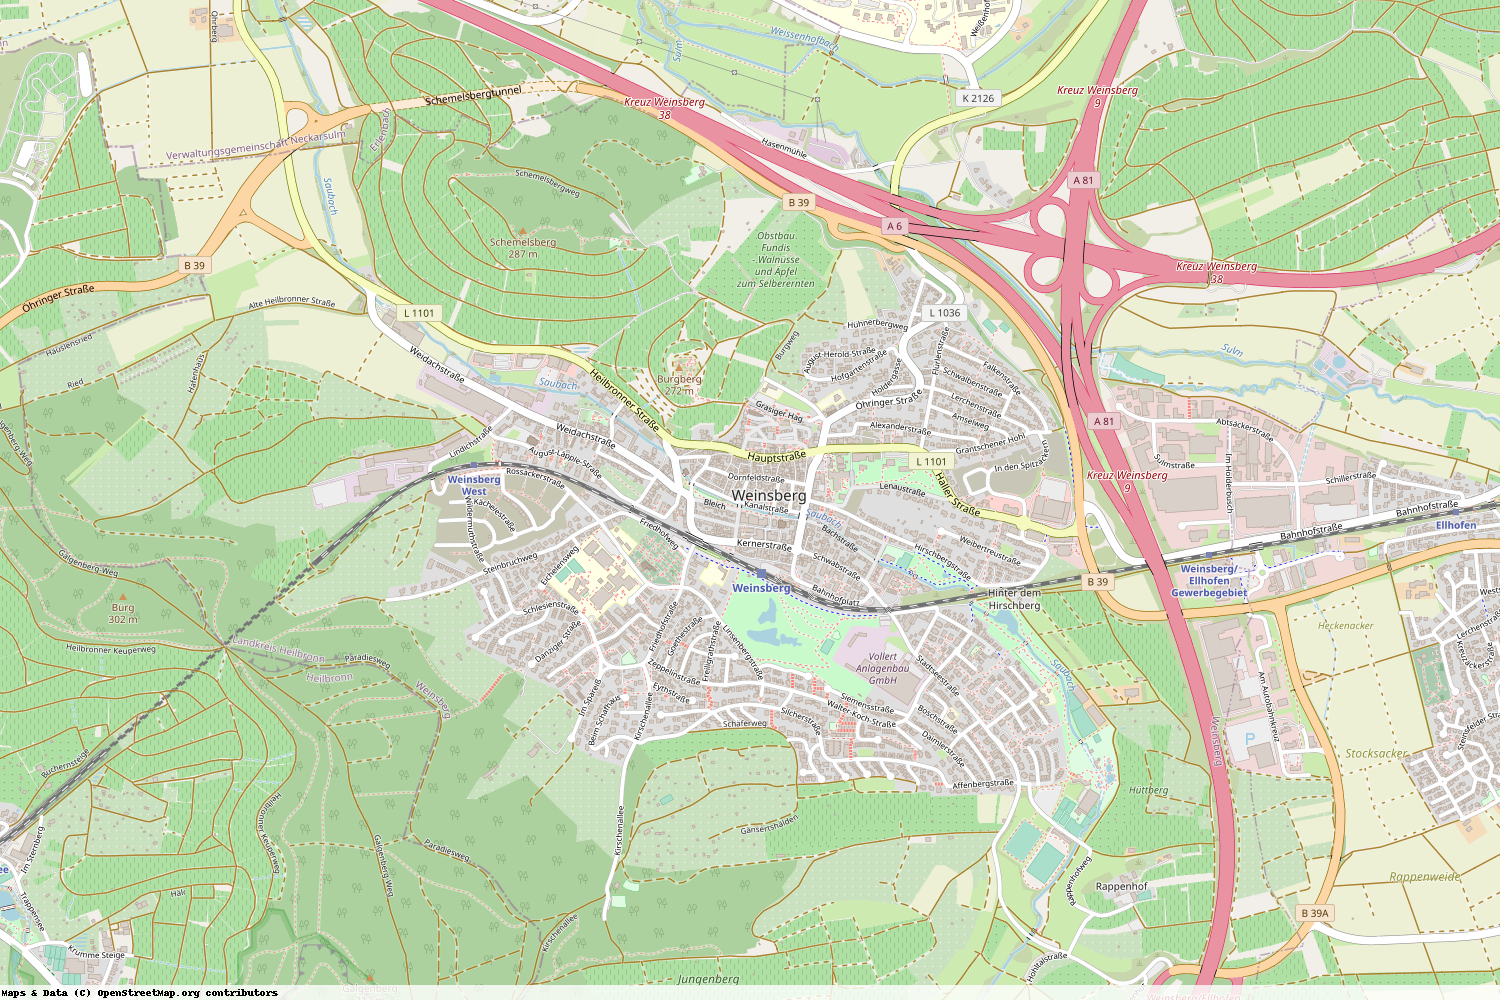 Ist gerade Stromausfall in Baden-Württemberg - Heilbronn - Weinsberg?